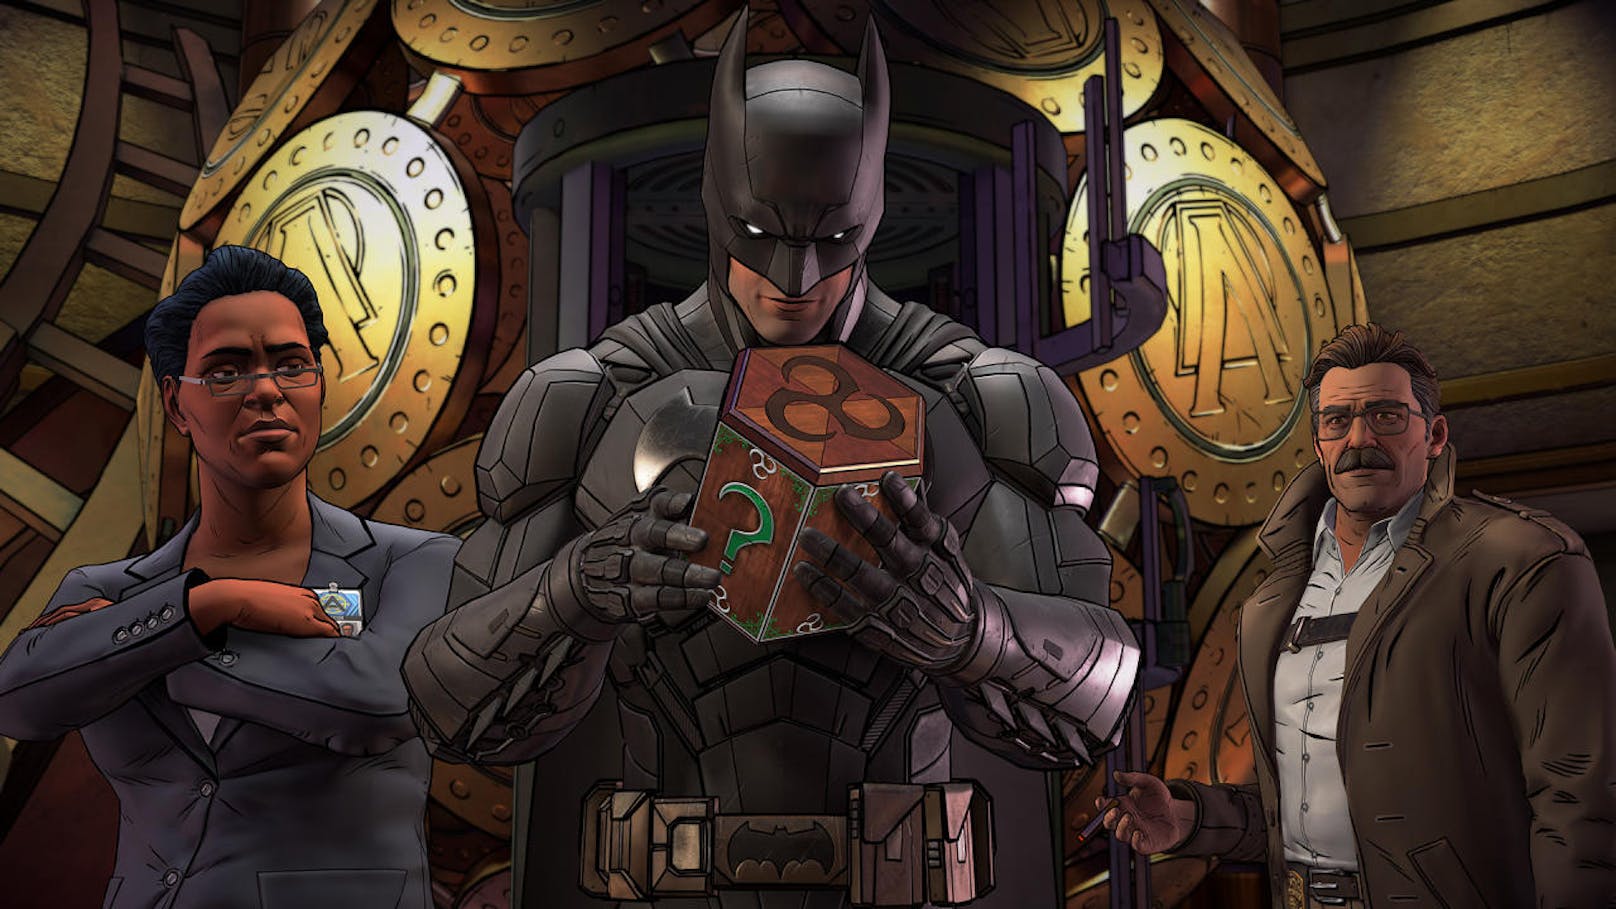 In Episode 1 "The Enigma" trifft Batman dabei nicht nur auf die teuflischen Rätsel des Riddler, sondern hat, vor allem in der Form von Bruce Wayne, auch mit den Bundesbehörden zu kämpfen, die ihm Verbrechen anhängen wollen.